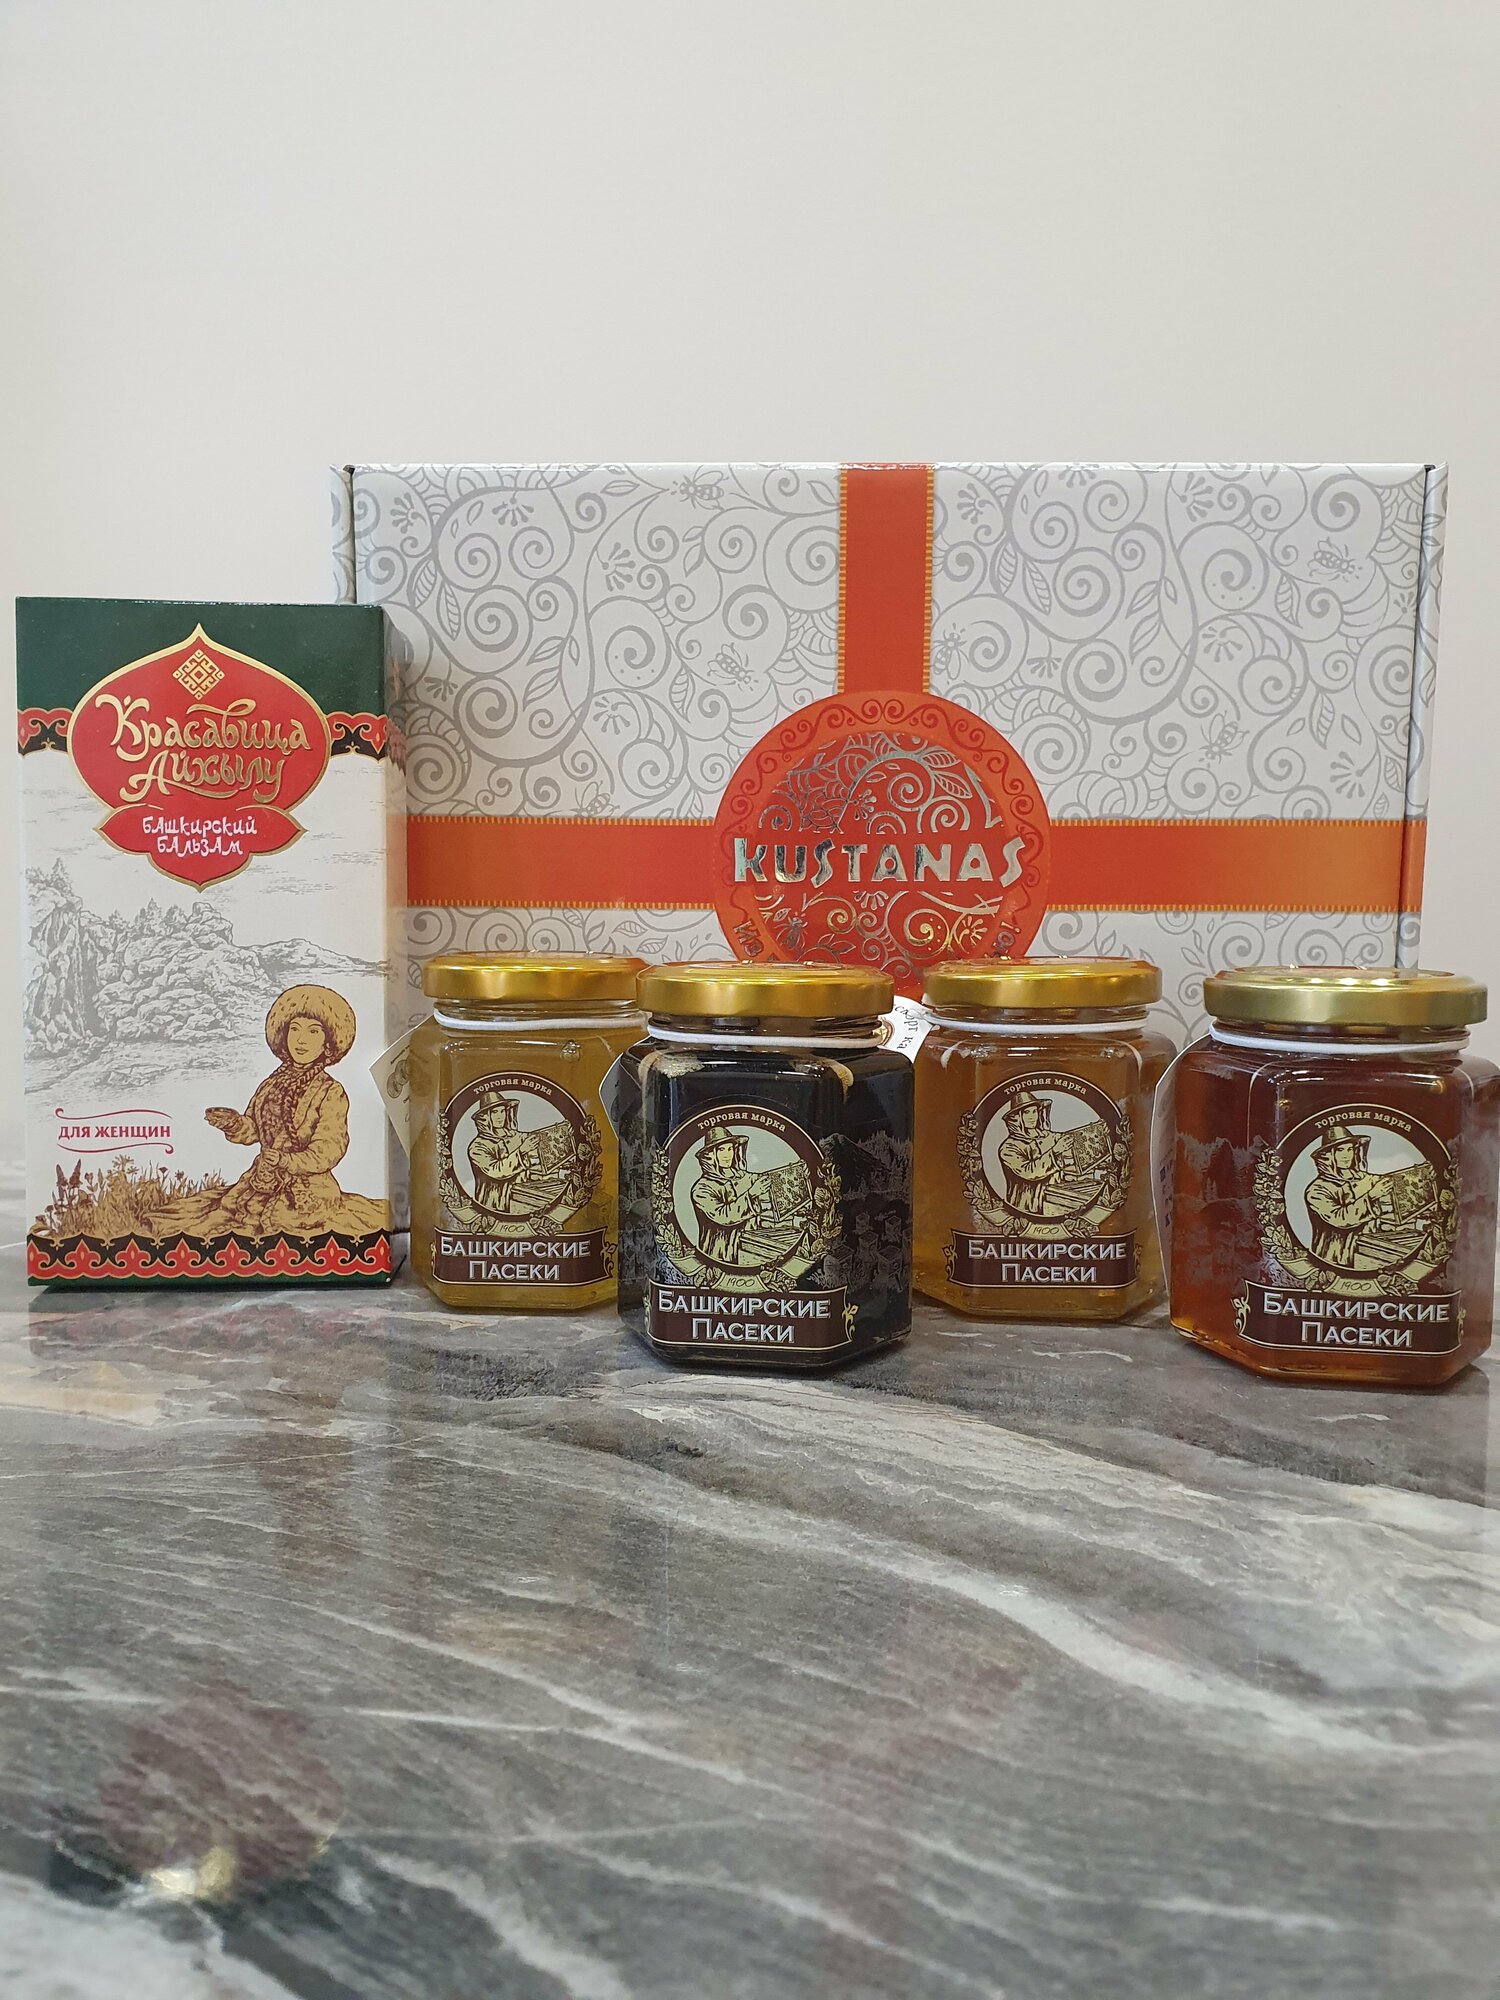 Подарочный, сувенирный набор с Башкирским медом и бальзамом "Куштанаш 1" женский "Башкирские пасеки+"